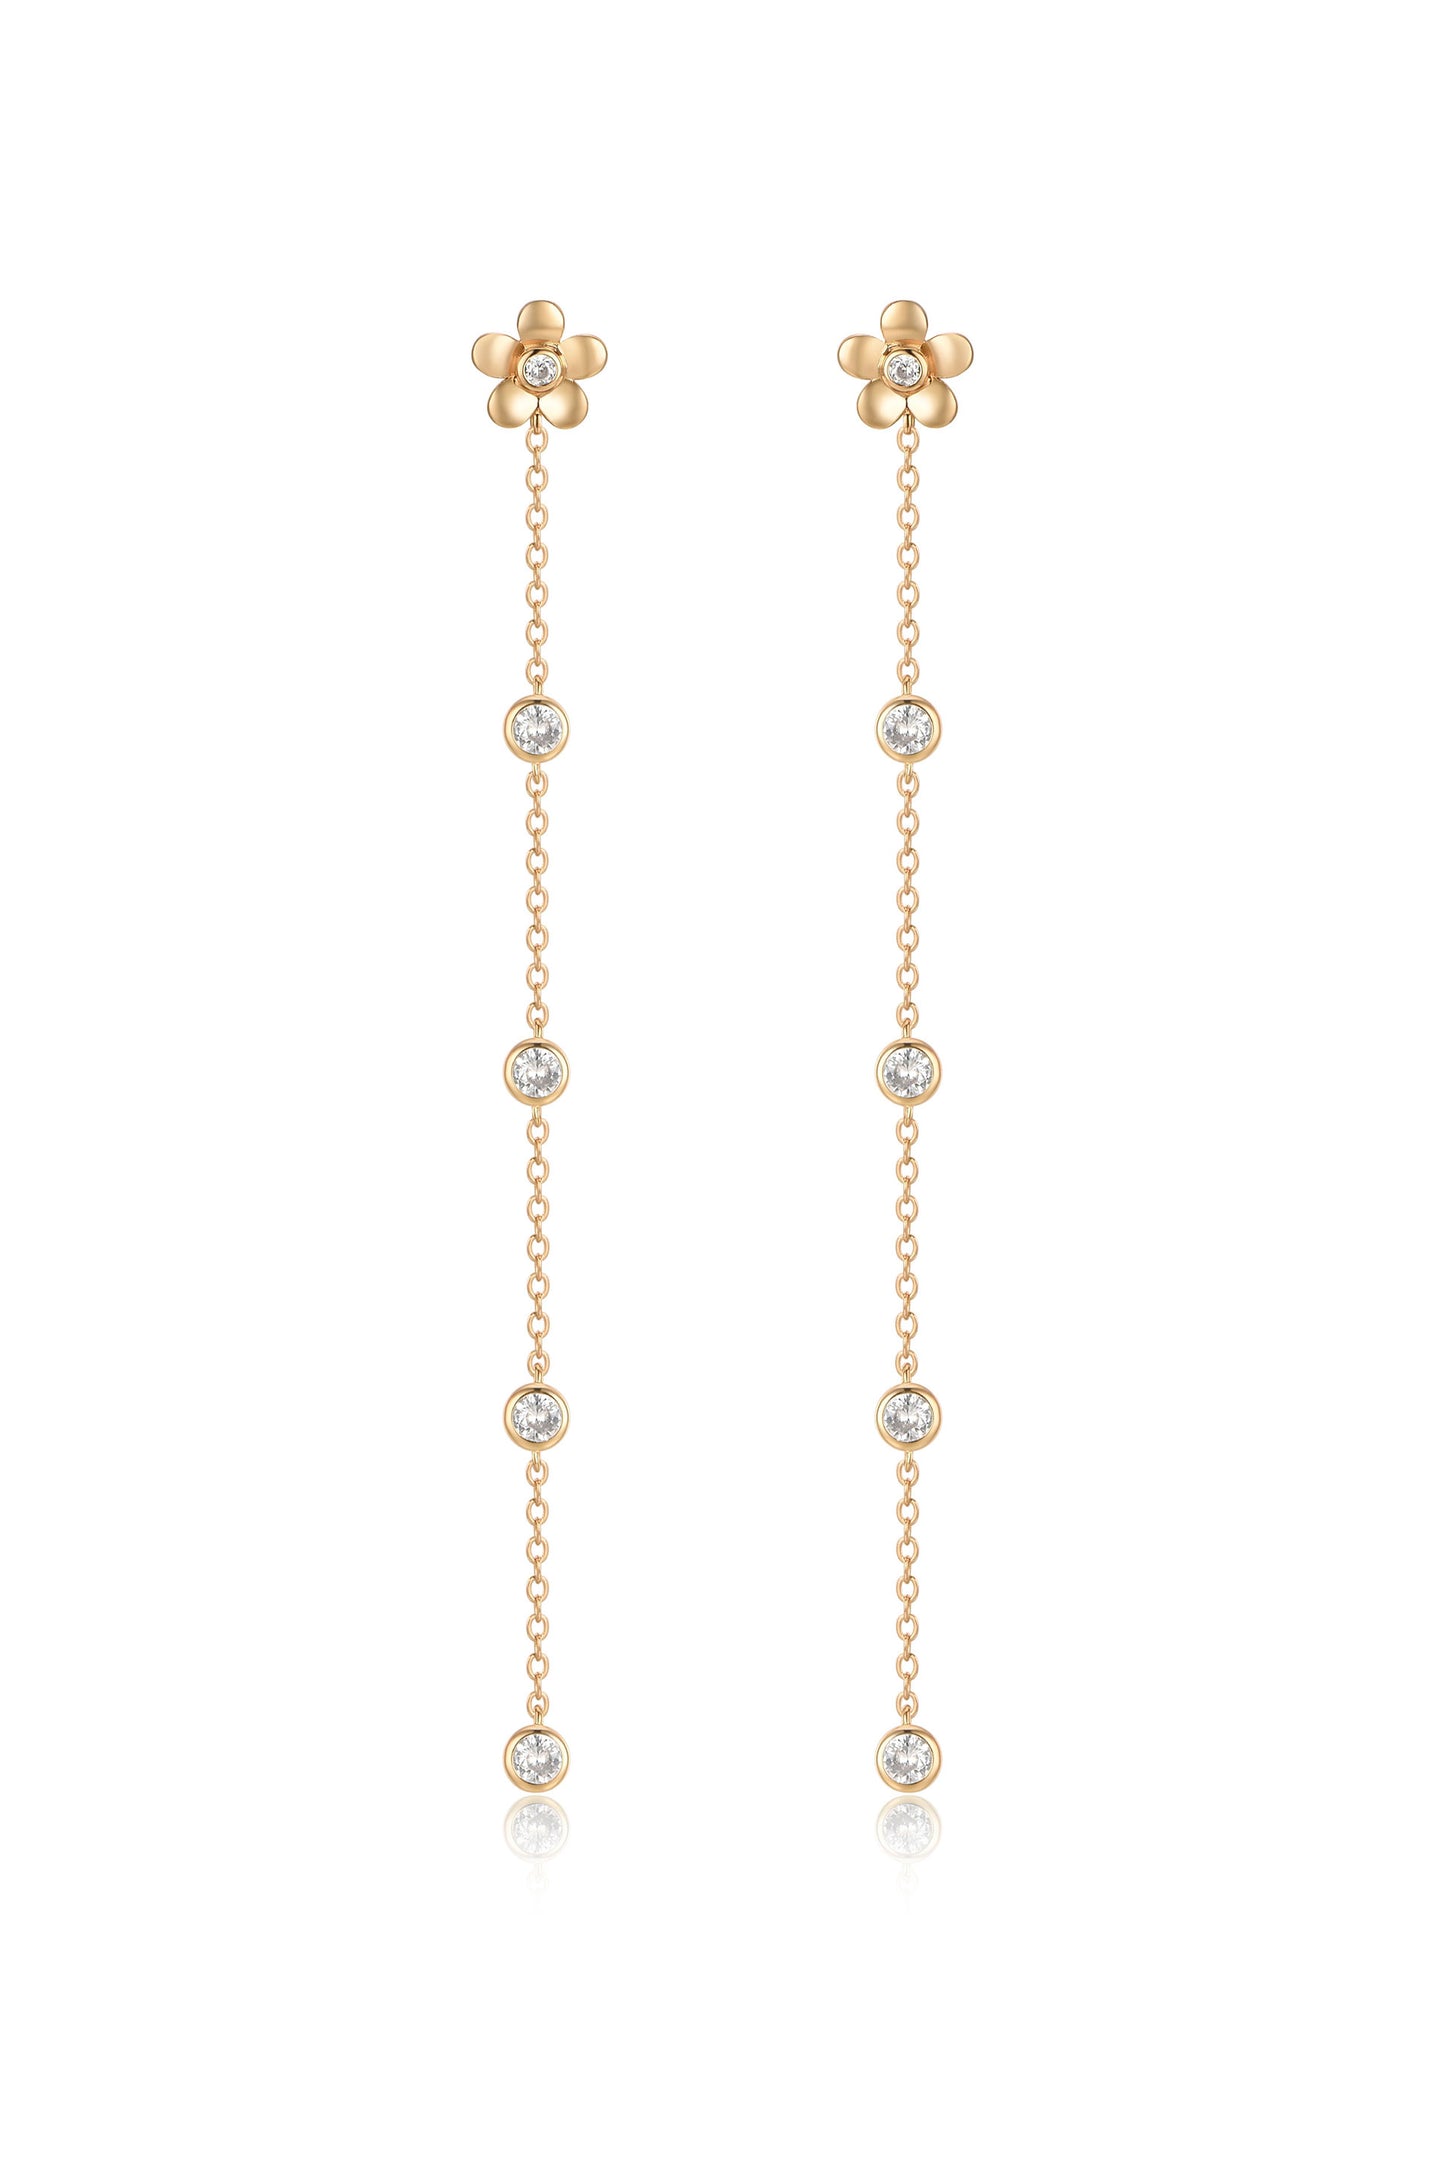 Single Flower Linear Dangle 18k Gold Plated Earrings on white